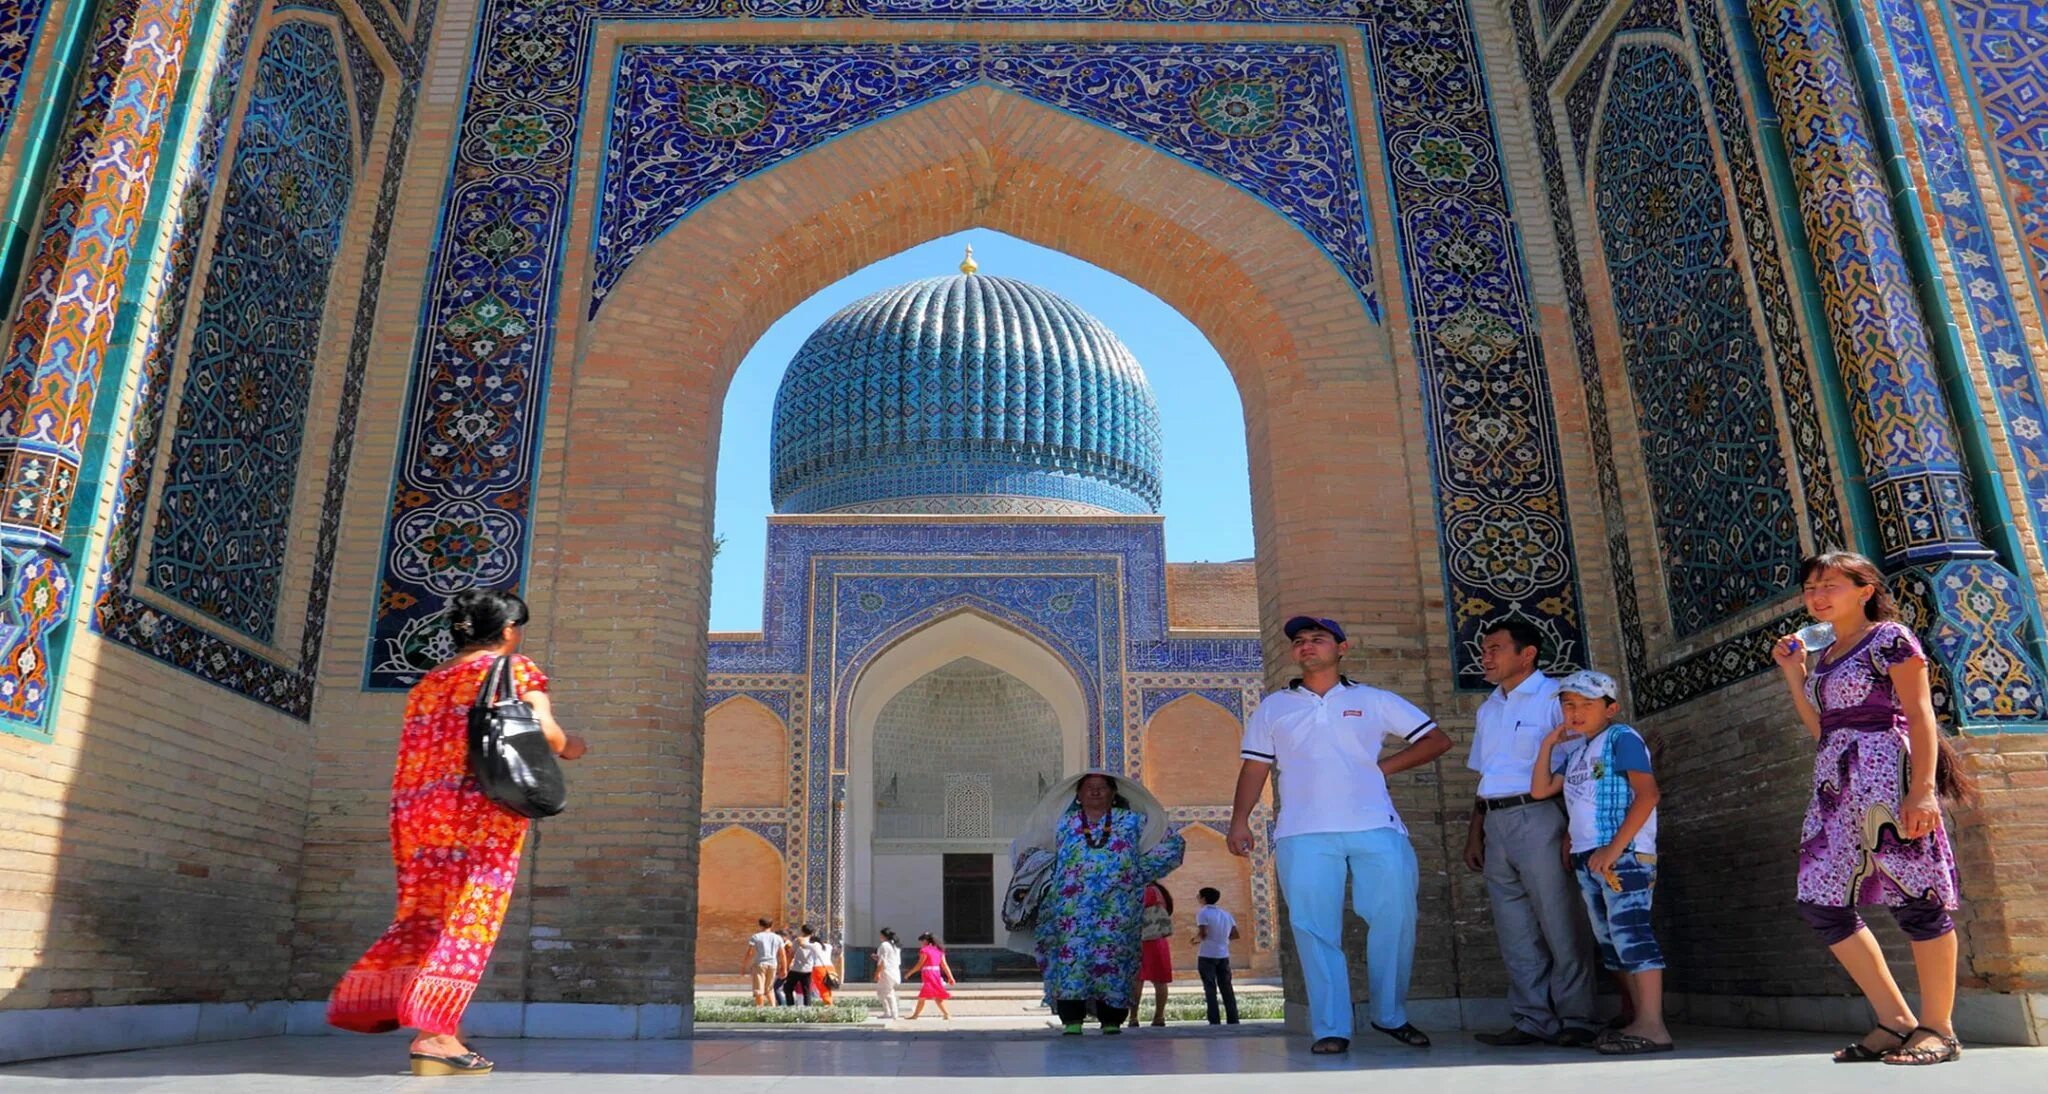 Туристы в Самарканде. Мечеть в Бухаре. Узбекистан. Самарканд город в Узбекистане население. Время в узбекистане по сравнению